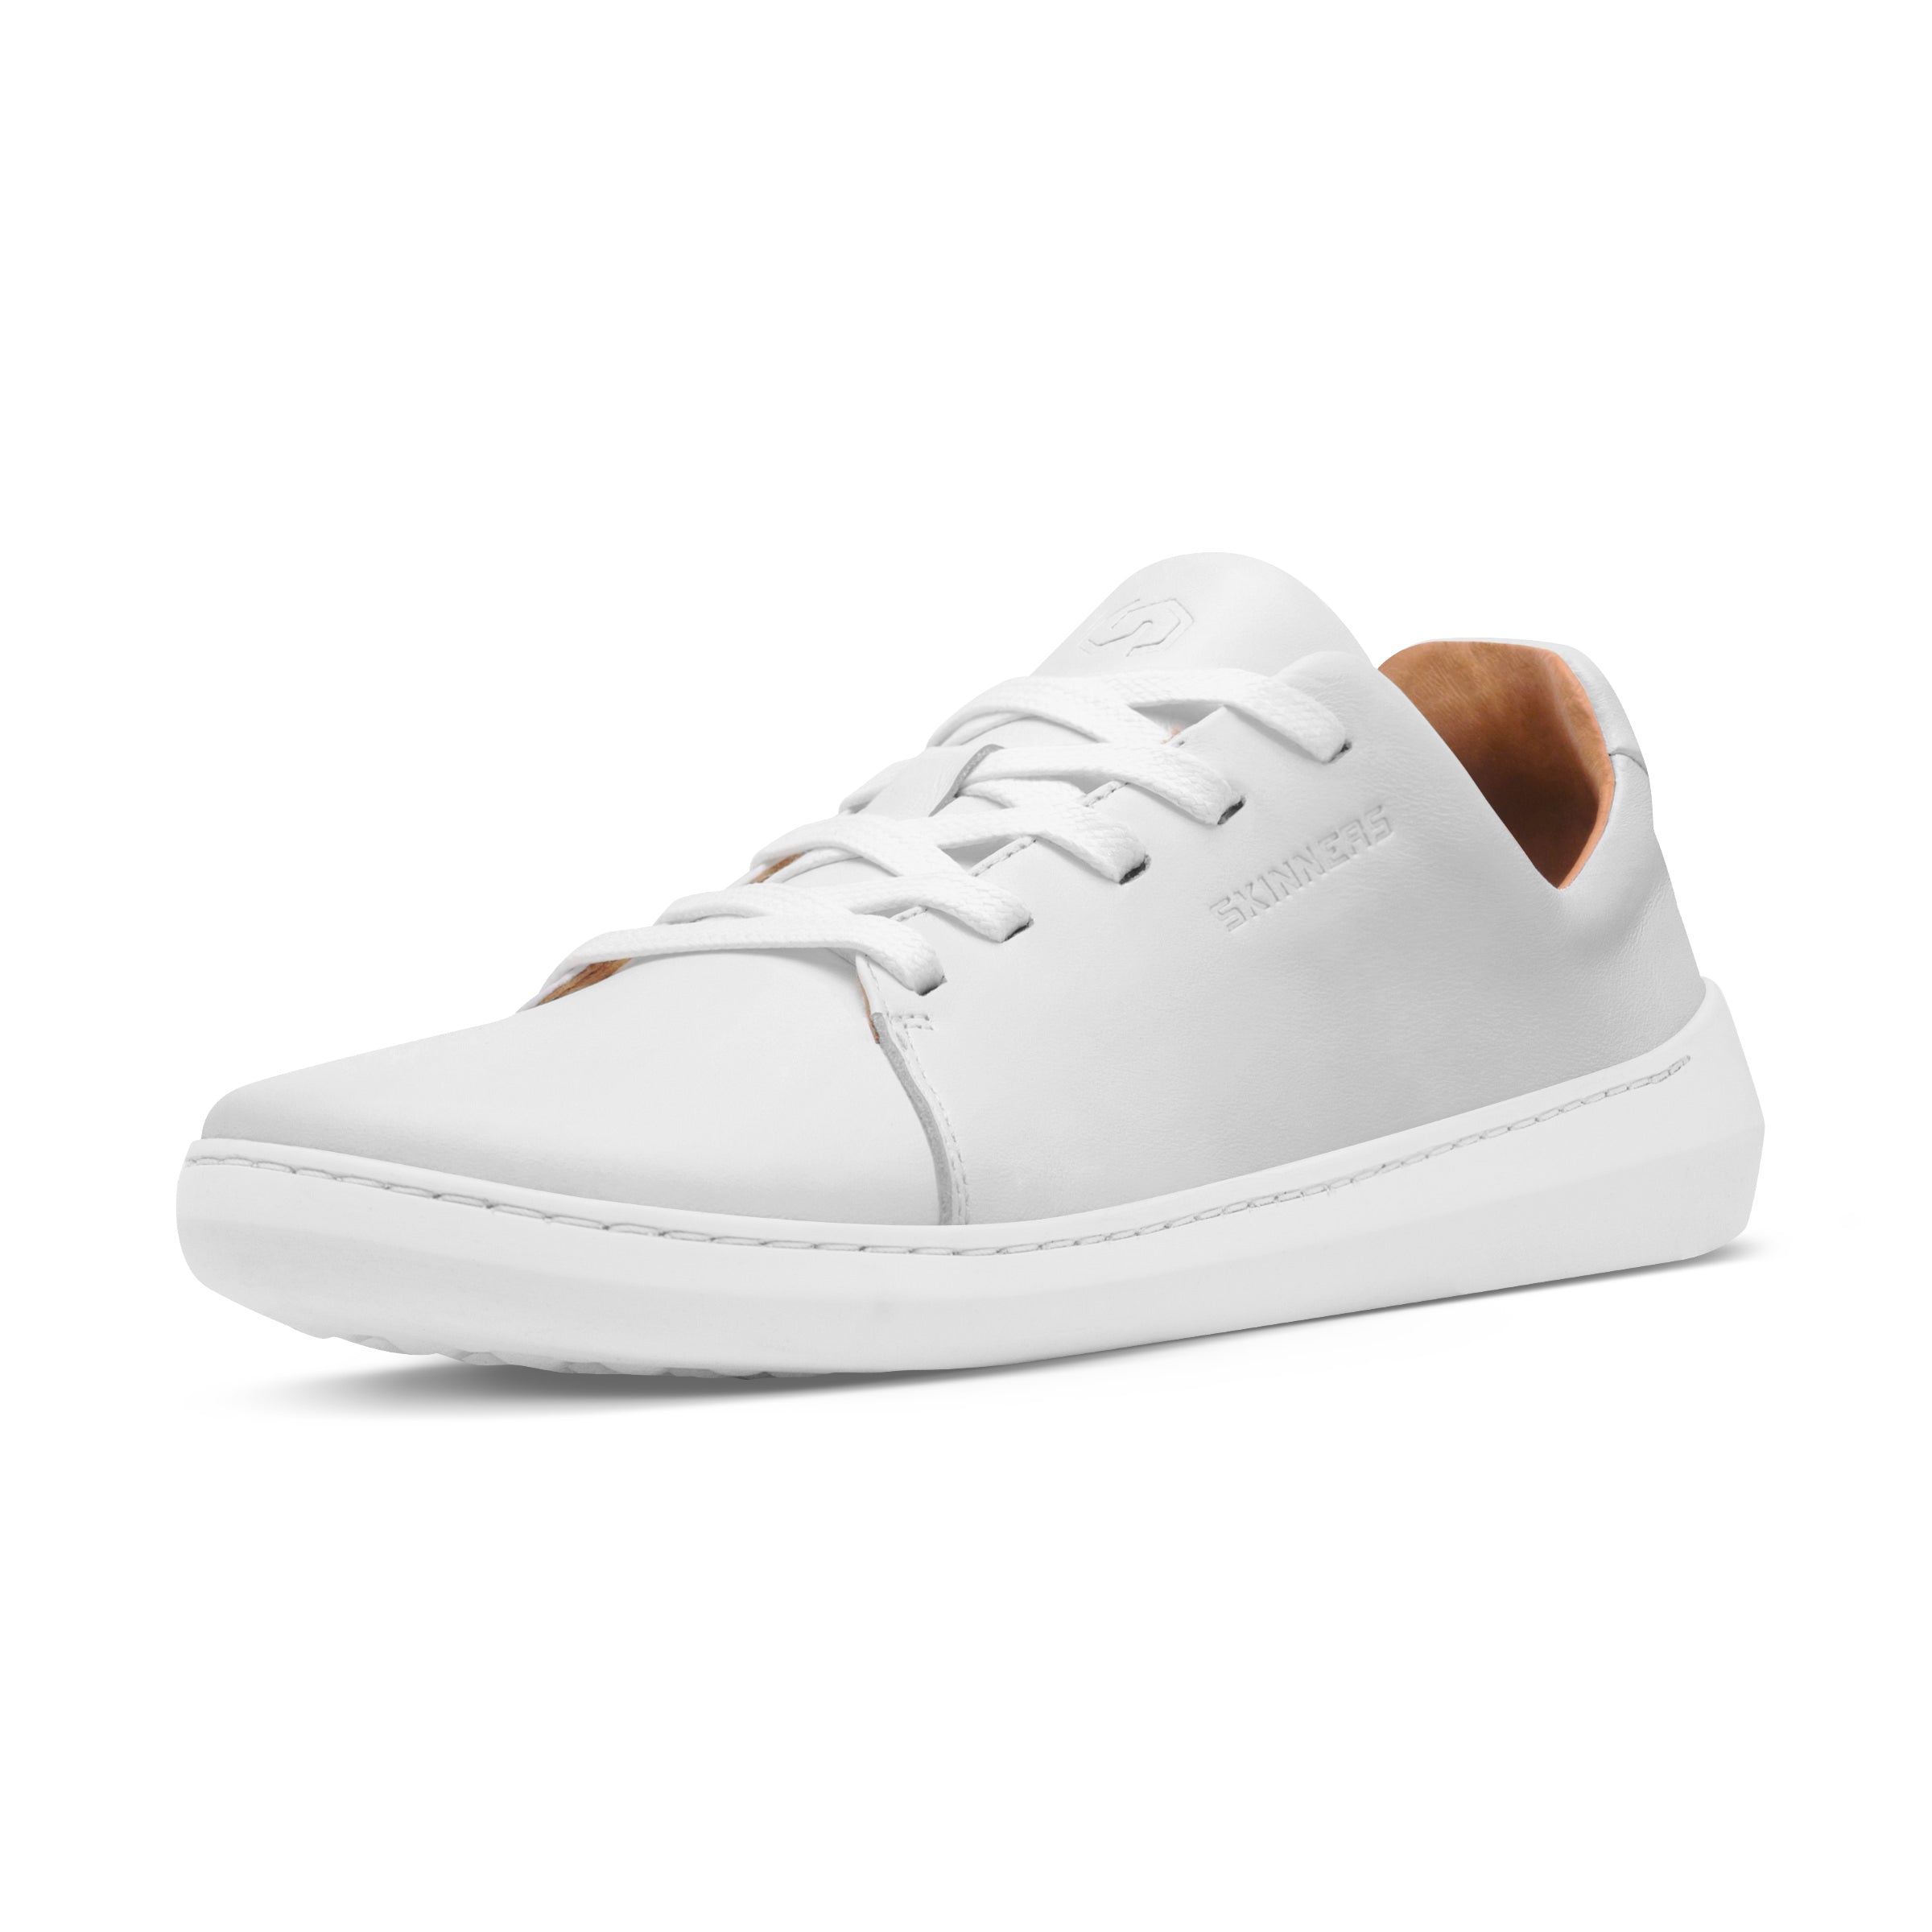 Mærkbare Walker barfods sneakers til kvinder og mænd i farven white / white, vinklet